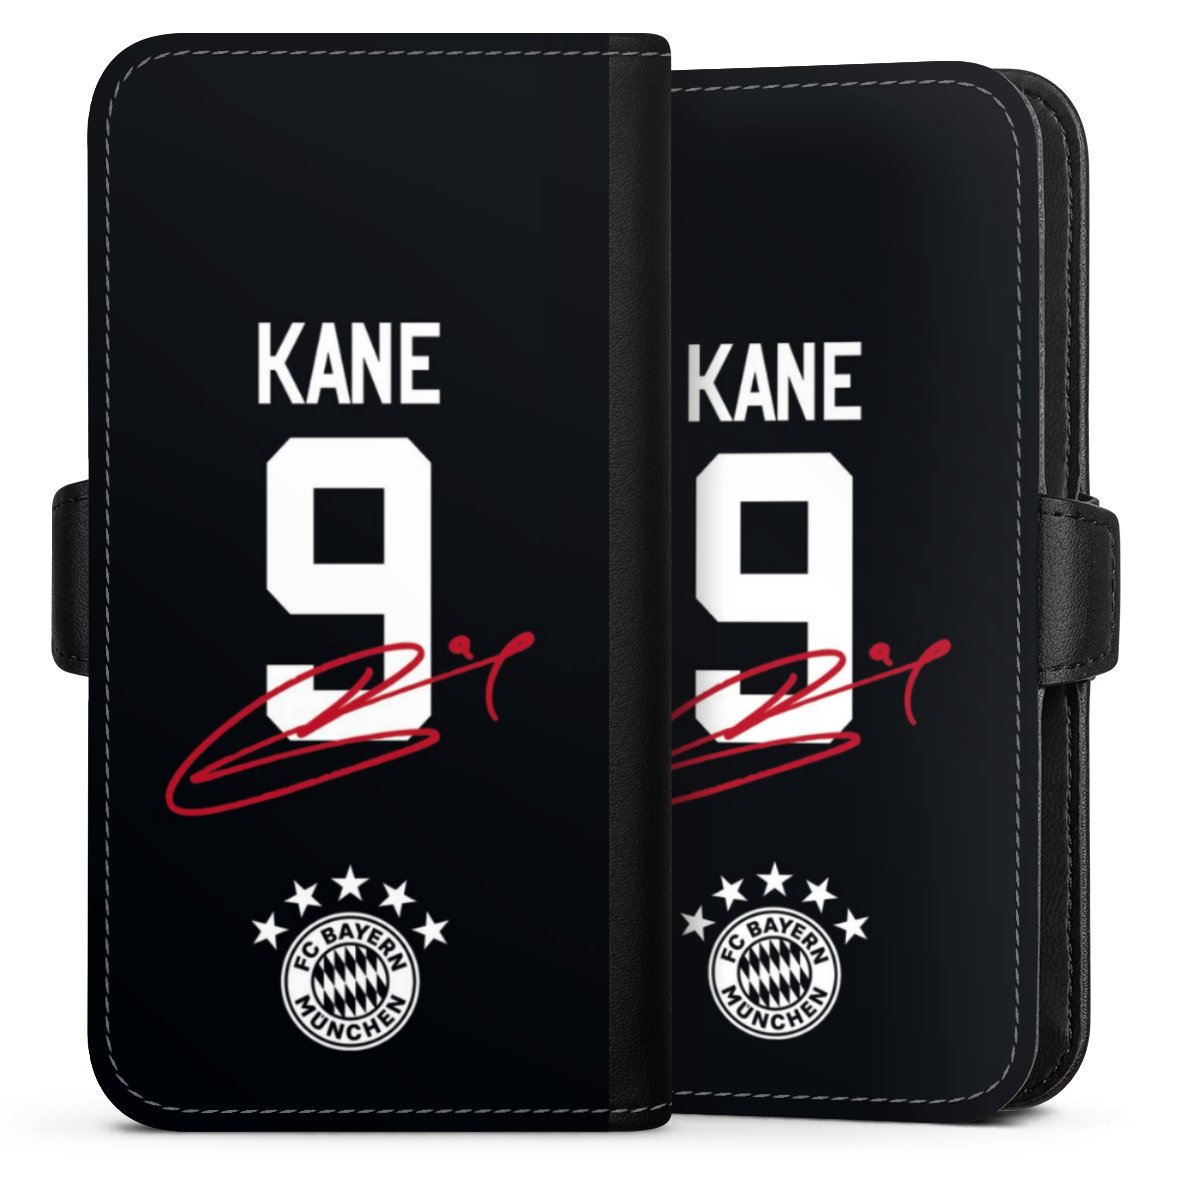 Kane 9